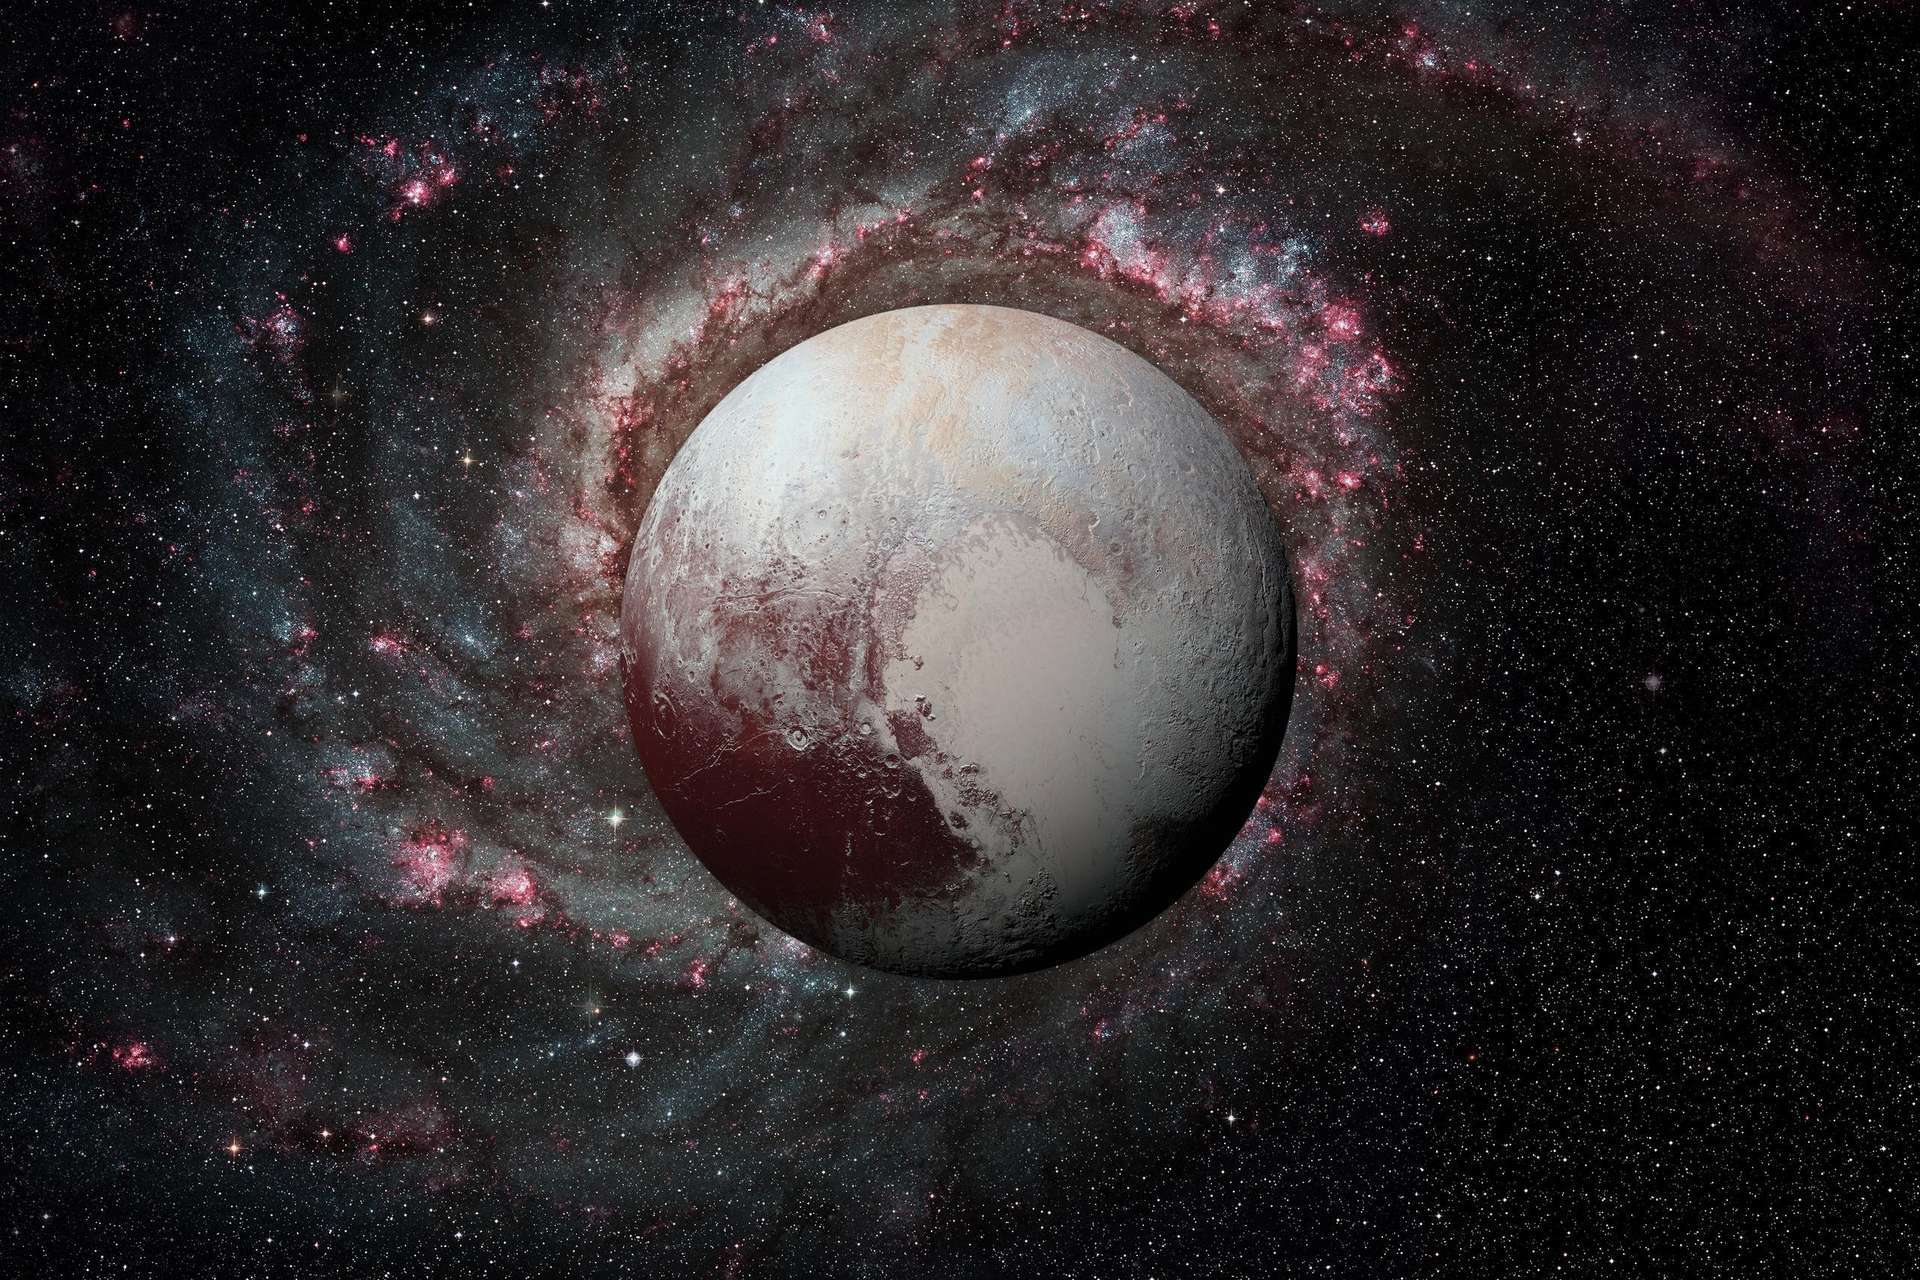 आखिर क्यों रखा प्लूटो ग्रह पर मिले 20 हज़ार फ़ीट ऊंचे पर्वत का नाम तेनज़िंग नोर्गे